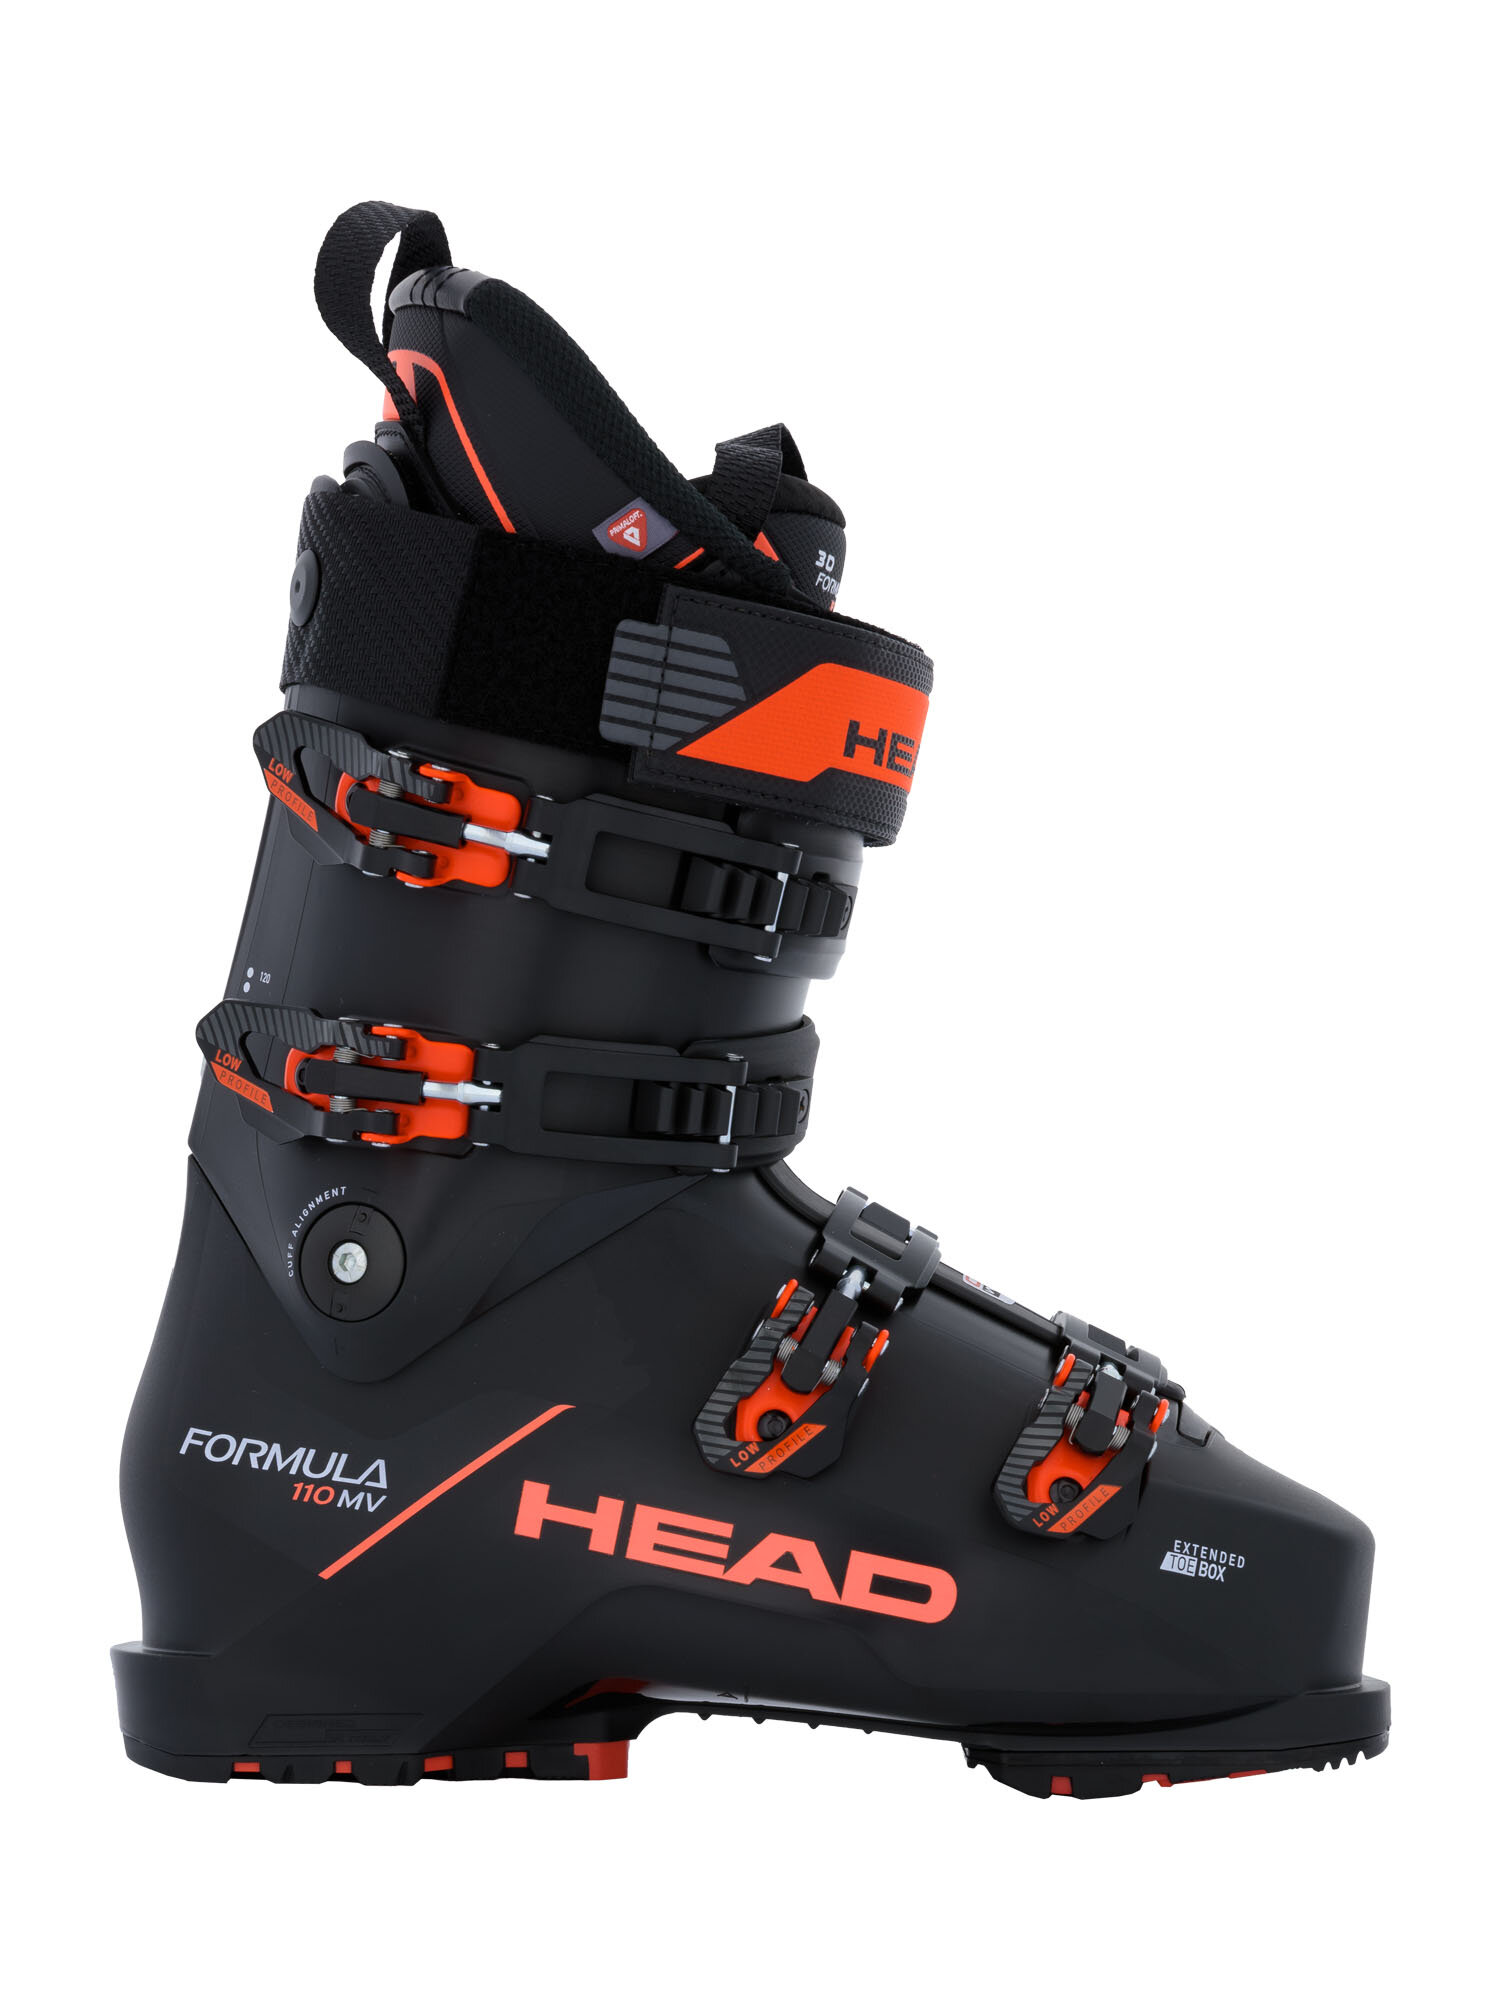 Горнолыжные ботинки HEAD Formula Mv 110 Gw Black/Red (см:27,5)